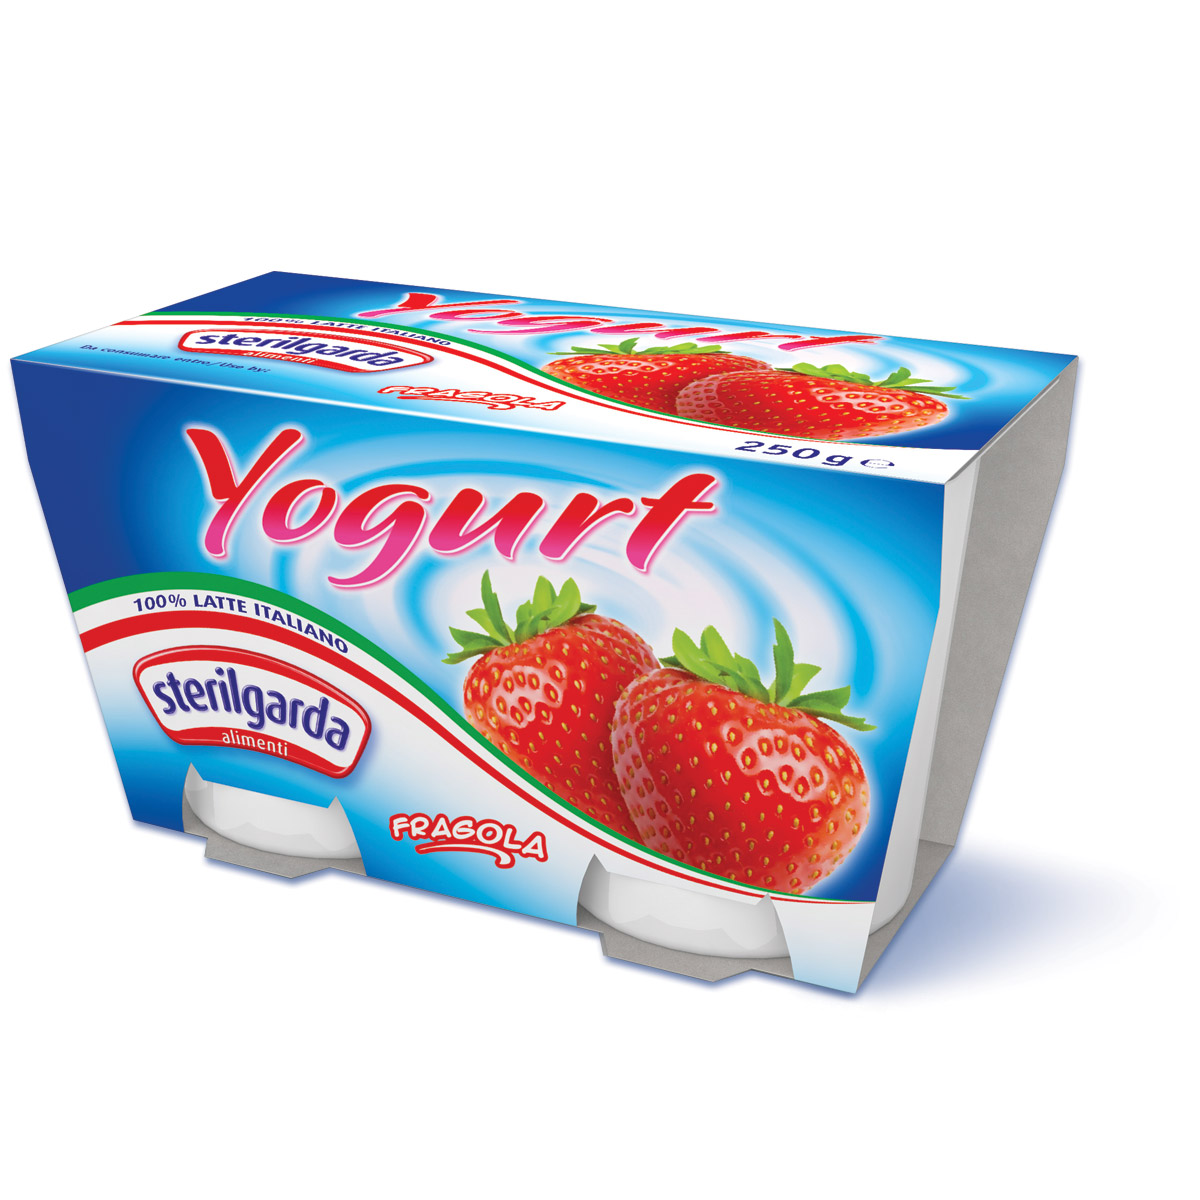 Yogurt Sterilgarda Gusto Fragola 2 x 125 g